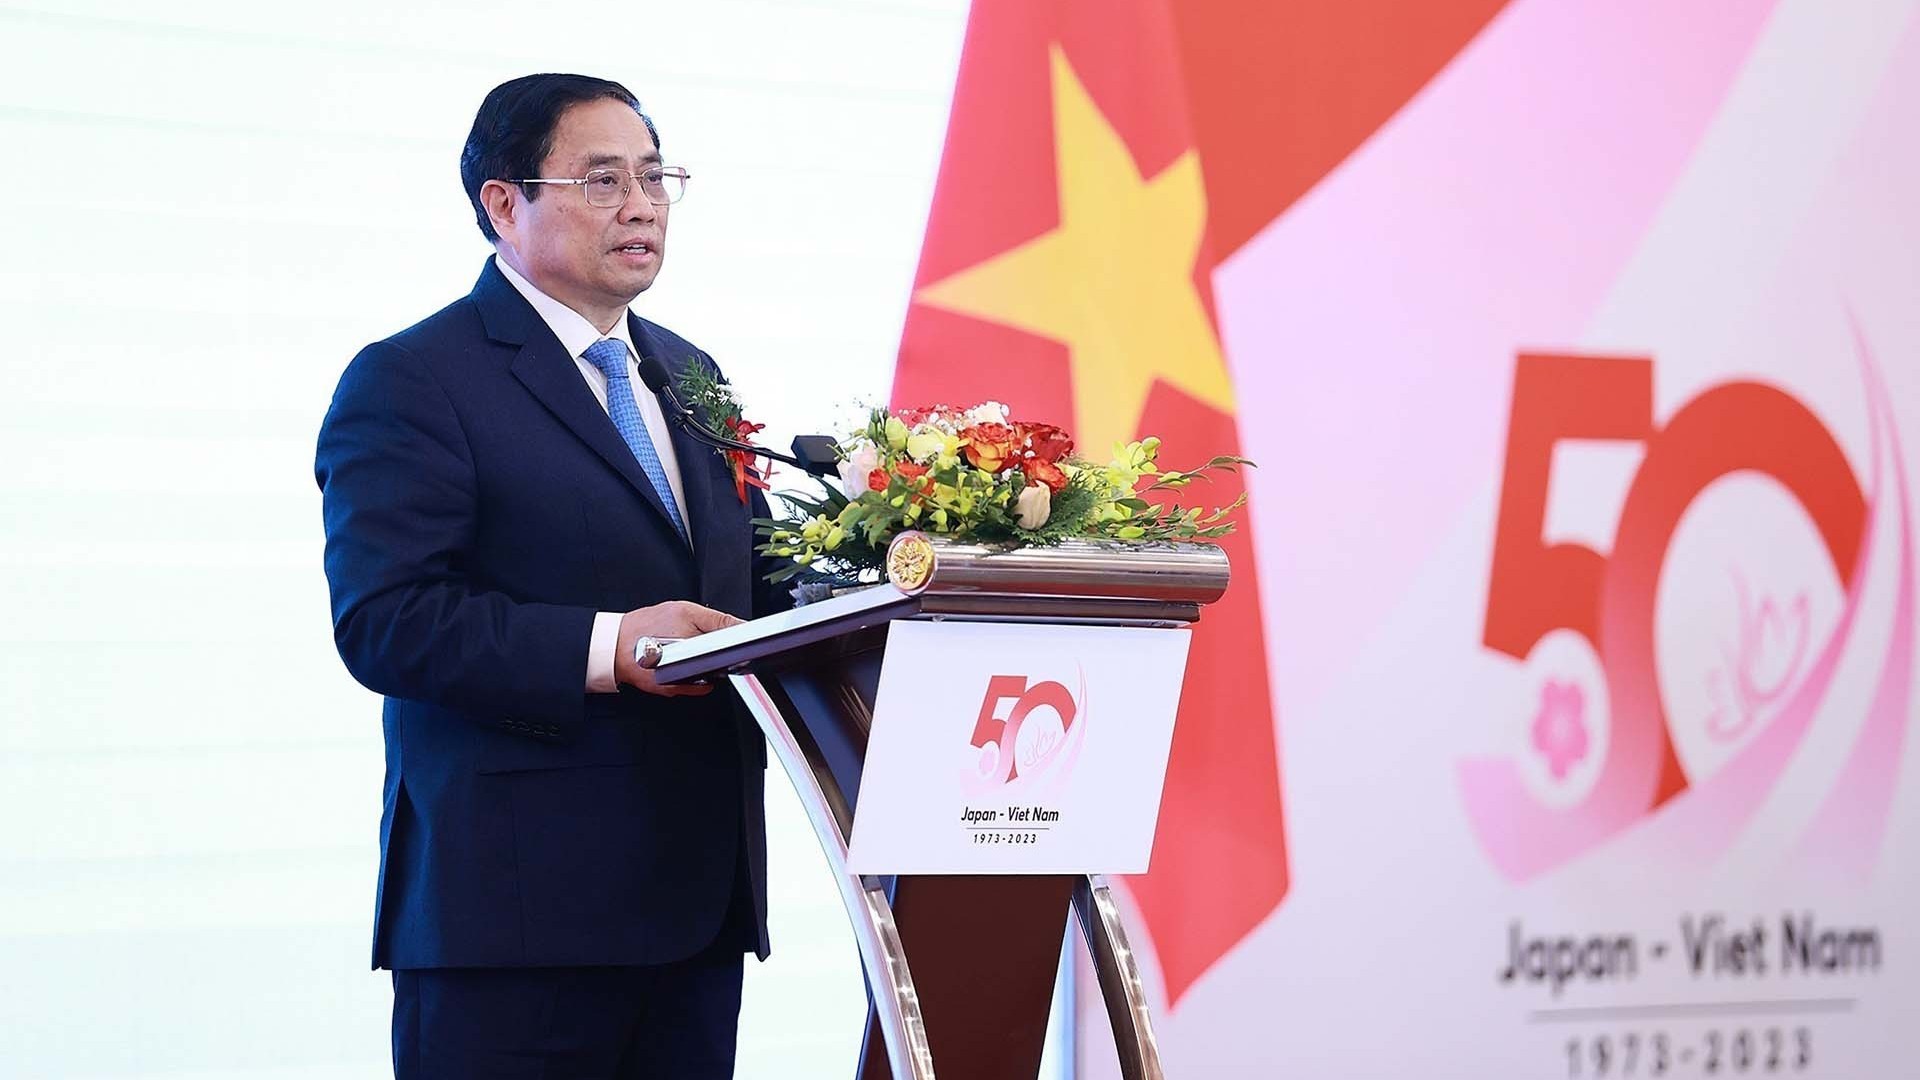 Quan hệ Việt Nam-Nhật Bản sẽ tiếp tục được củng cố bền chặt, hiệu quả, thực chất hơn